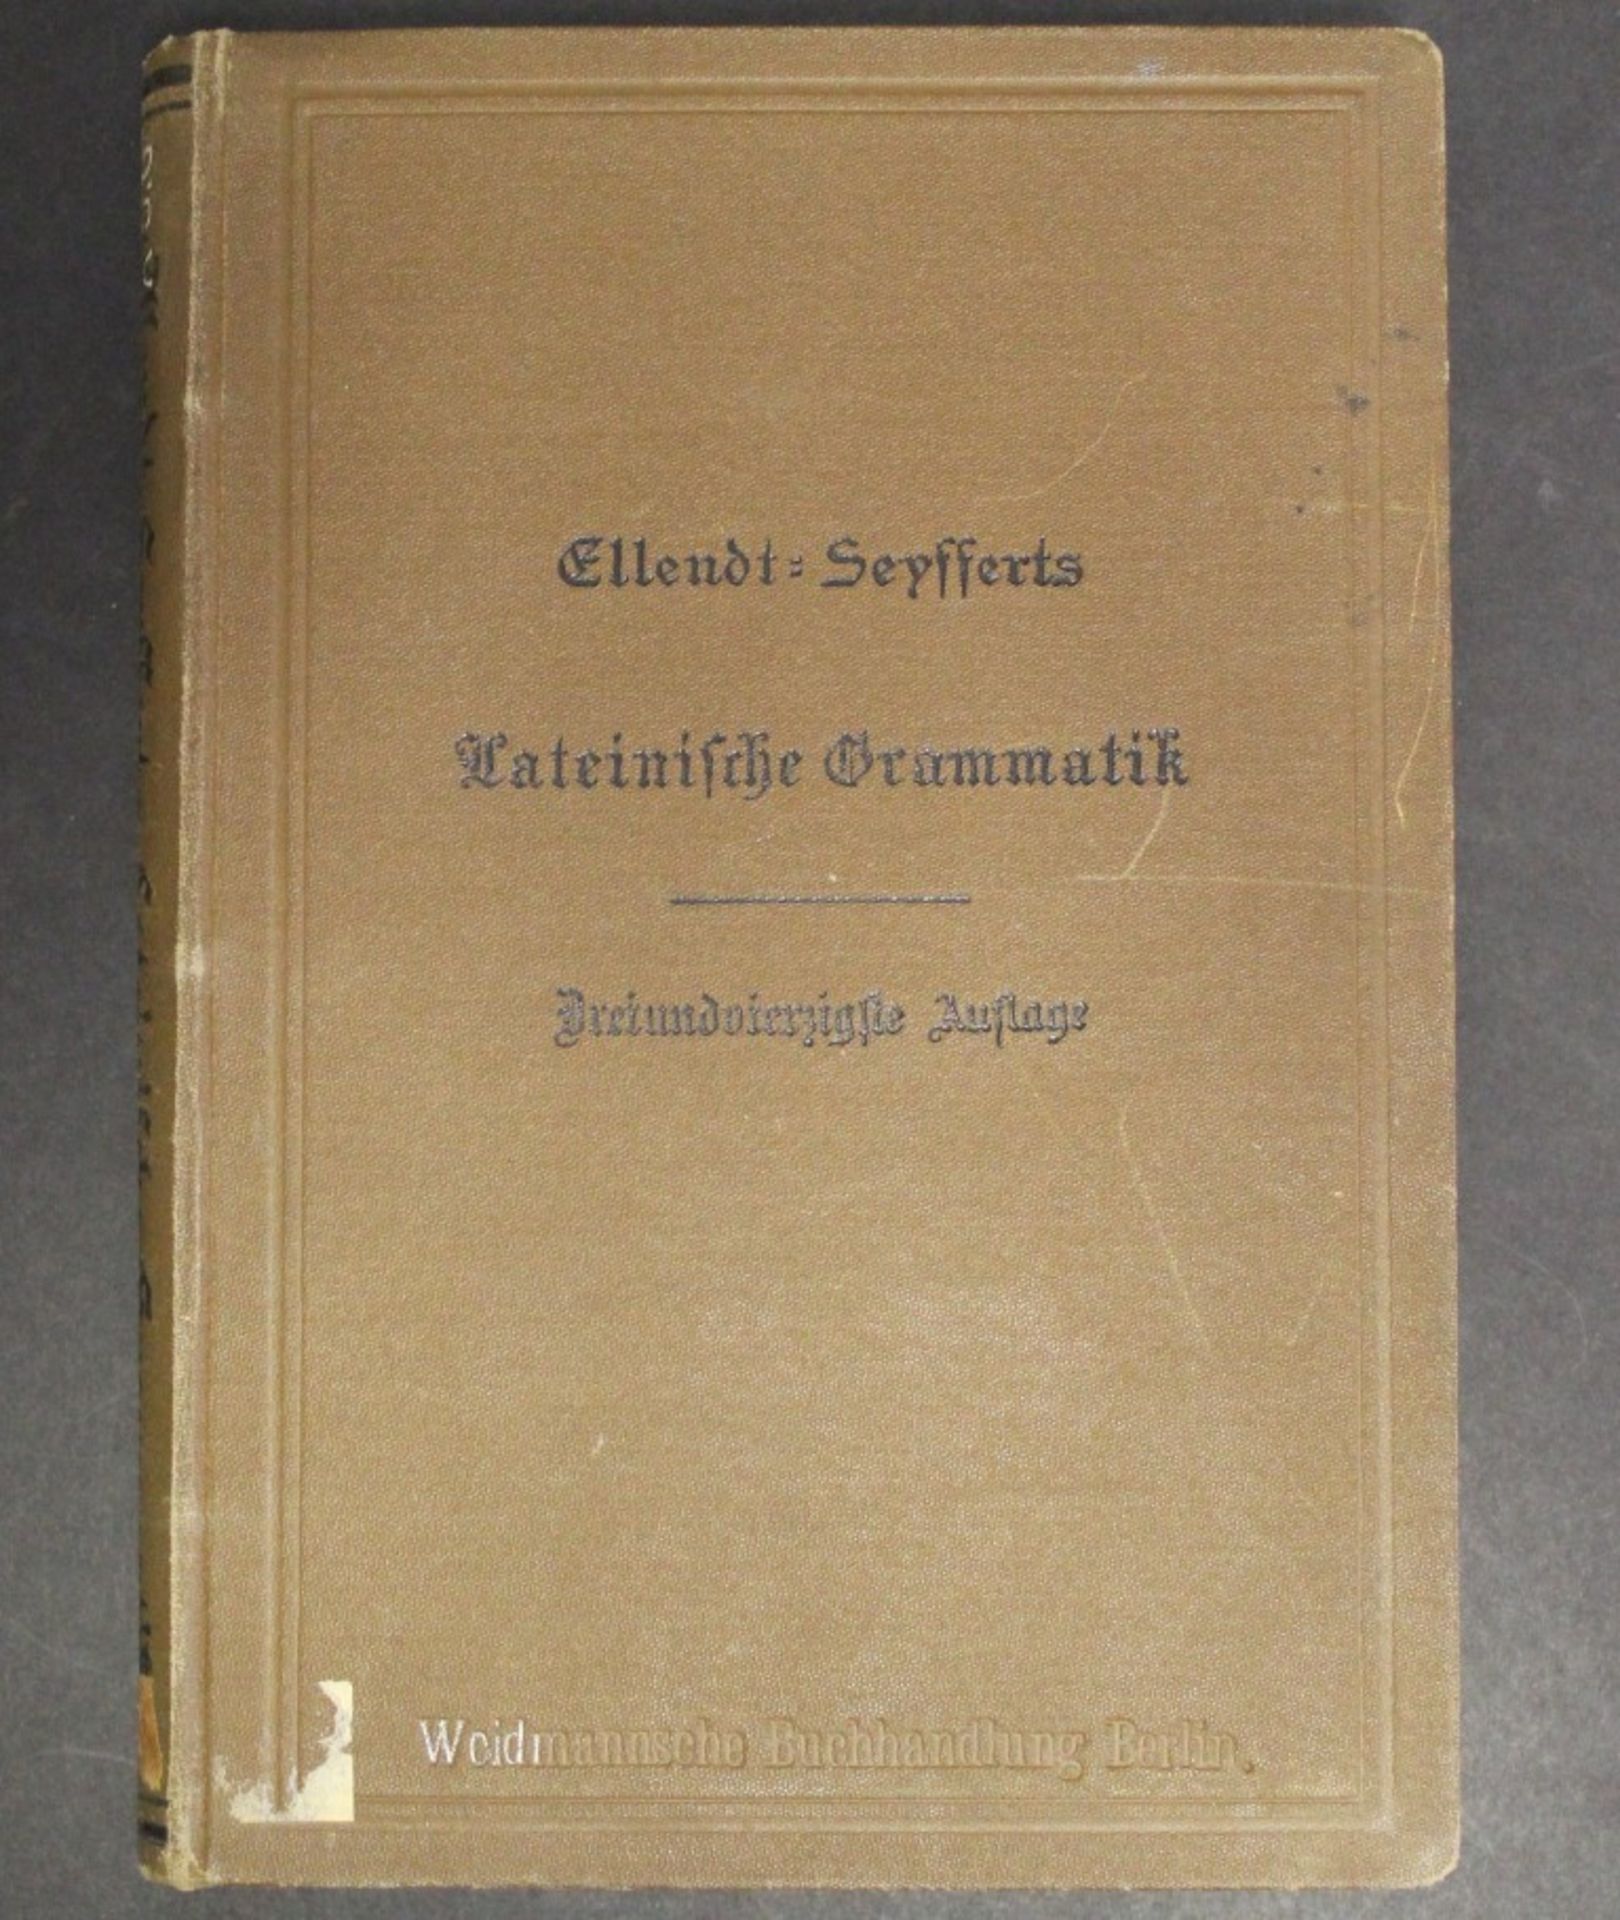 Lateinische Grammatik, Ellendt-Seyfferts,Berlin 1899, 43. Auflage,Alters-u. Gebrauchsspuren